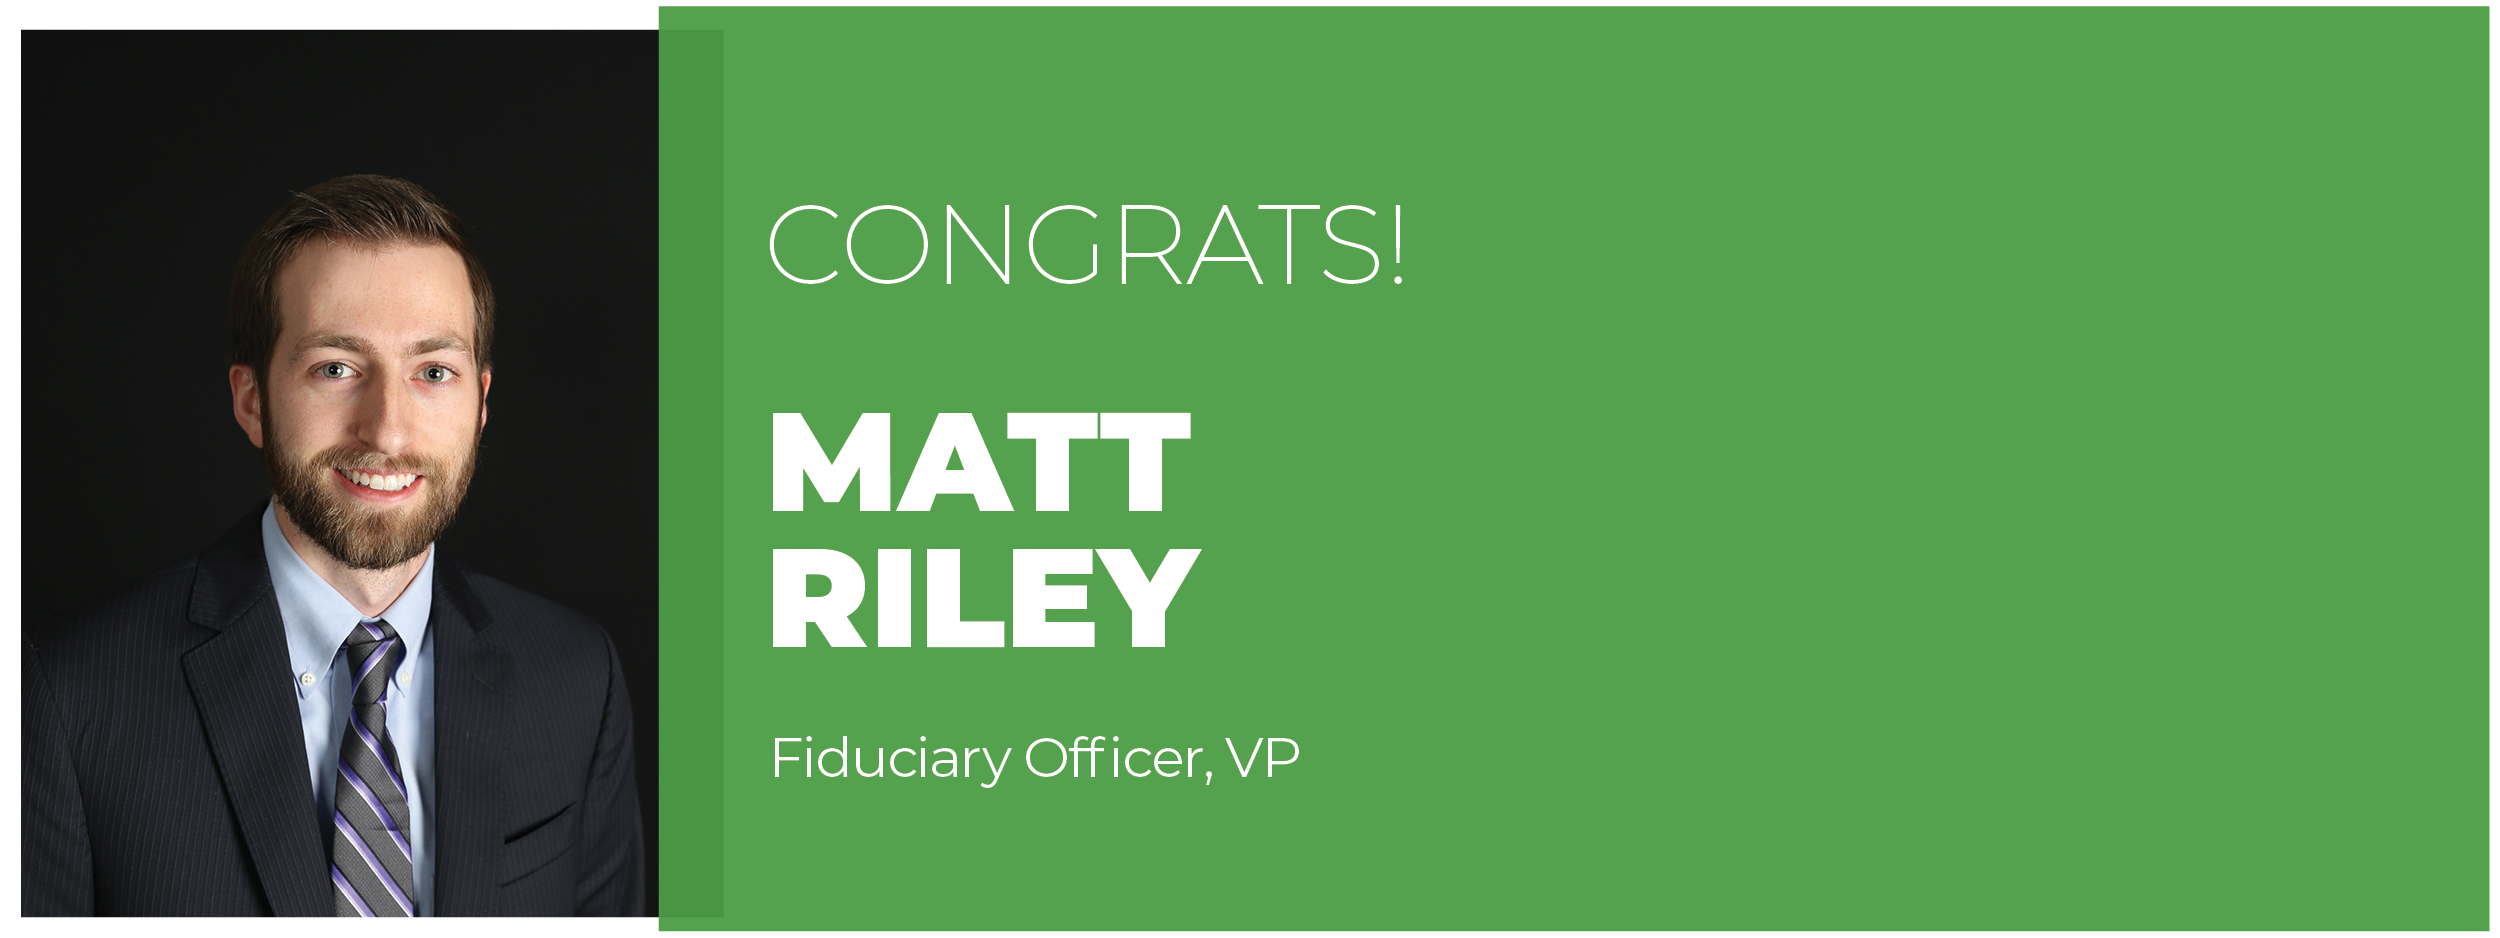 Matt Riley designation